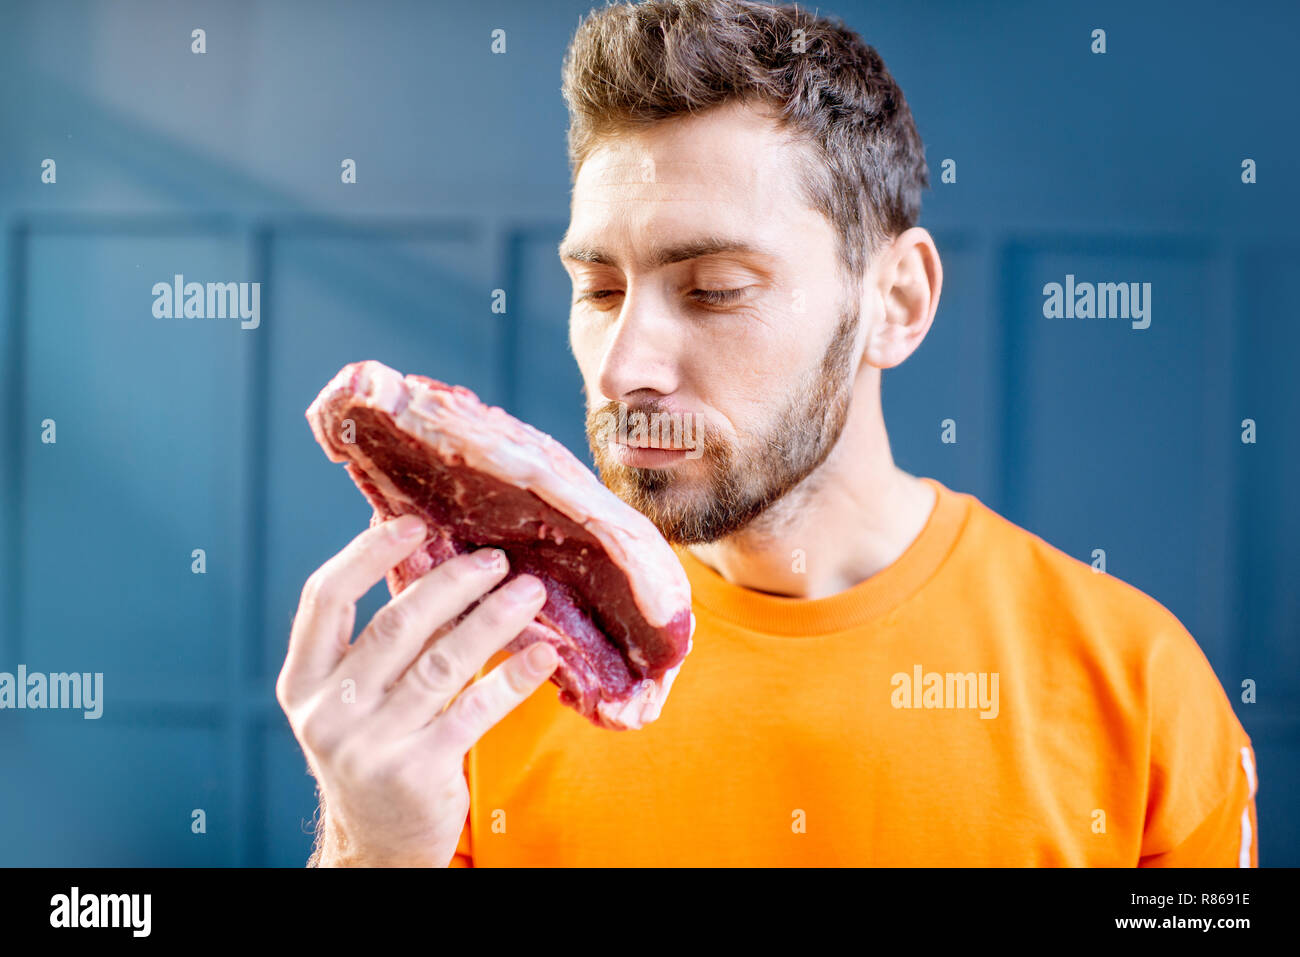 Konzeptionelle Porträt eines Mannes im hellen Pullover mit rohem Fleisch Steak auf dem blauen Hintergrund gekleidet Stockfoto